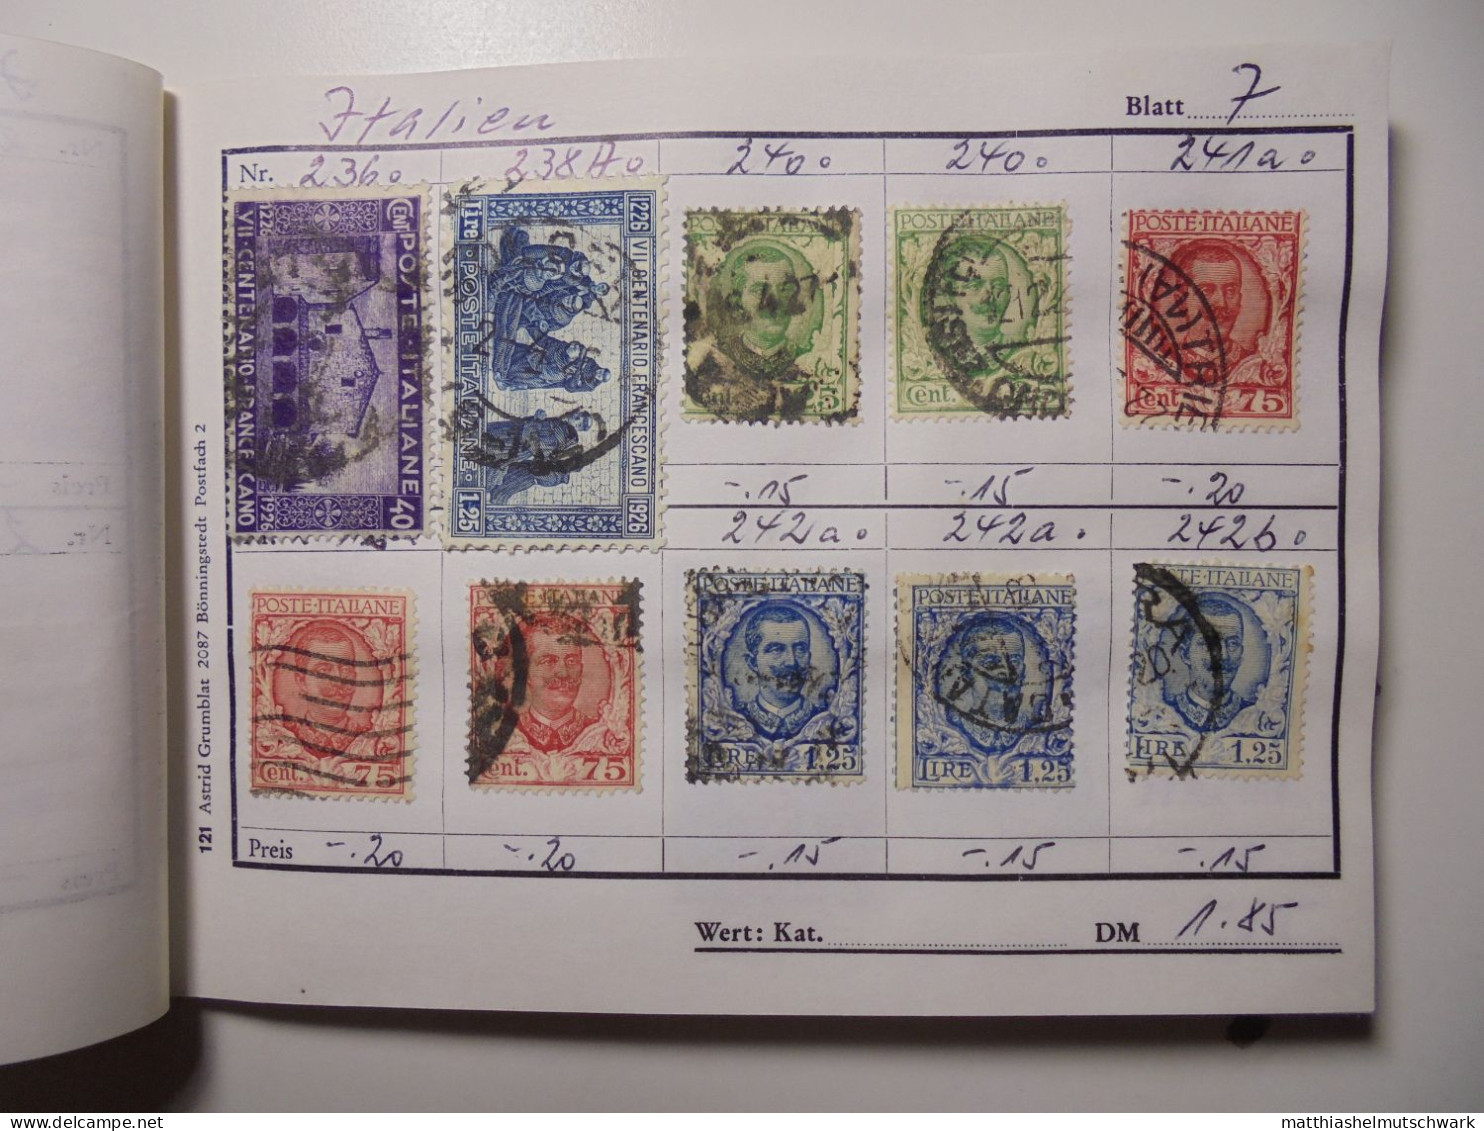 Auswahlheft Nr. 494 25 Blätter 214 Briefmarken  Italien 1879-1953/Mi Nr. 38-886, unvollständig € 100 StampWorld - Preis